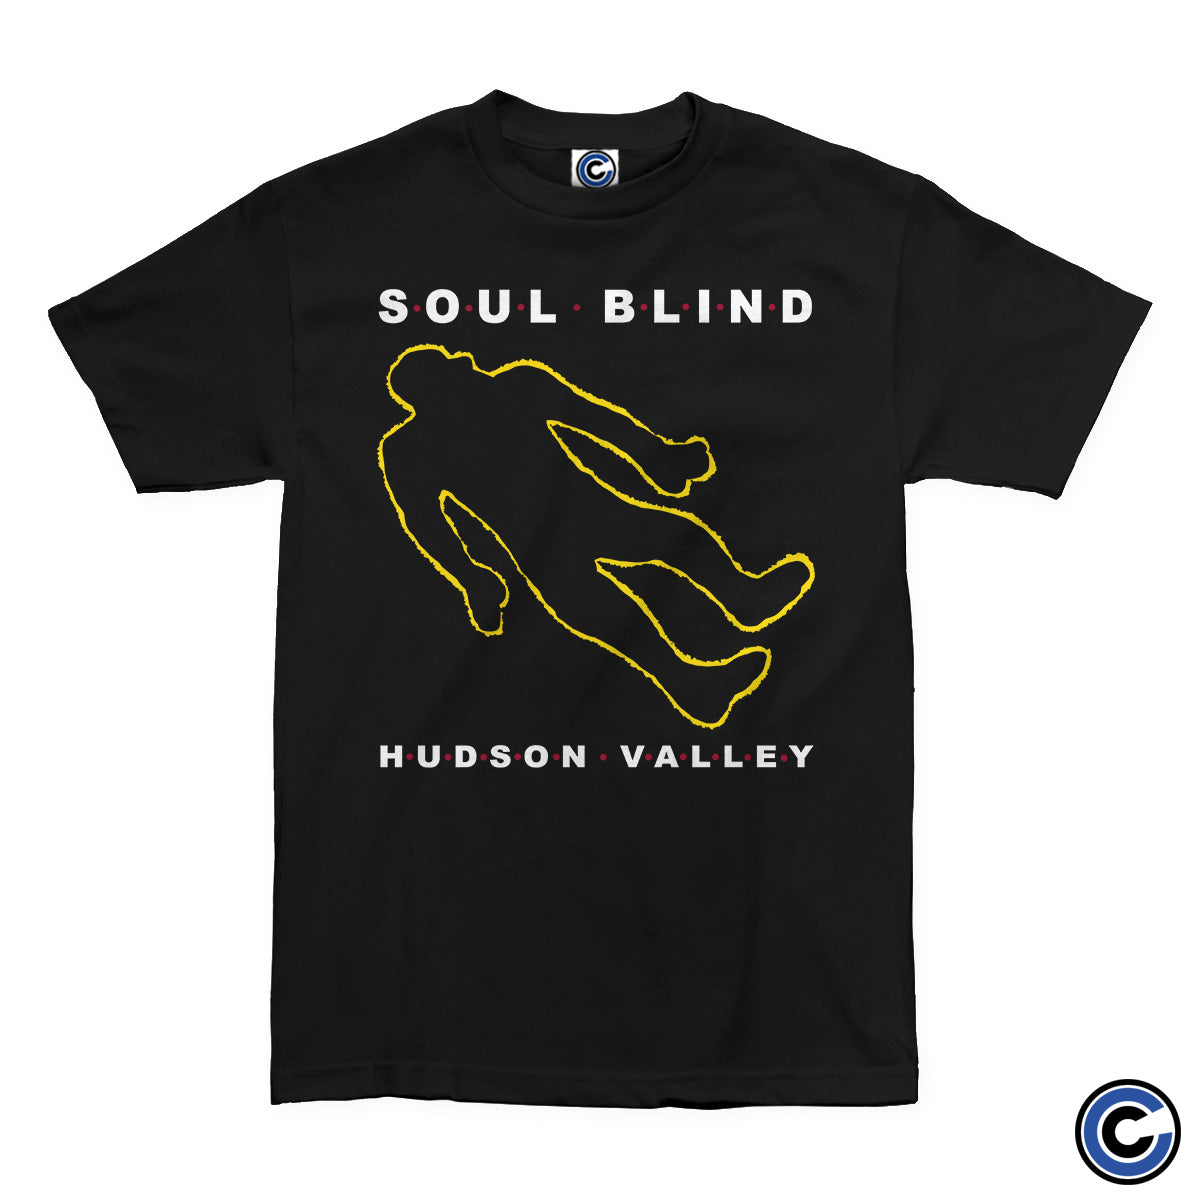 Soul Blind "Crime Scene" Shirt